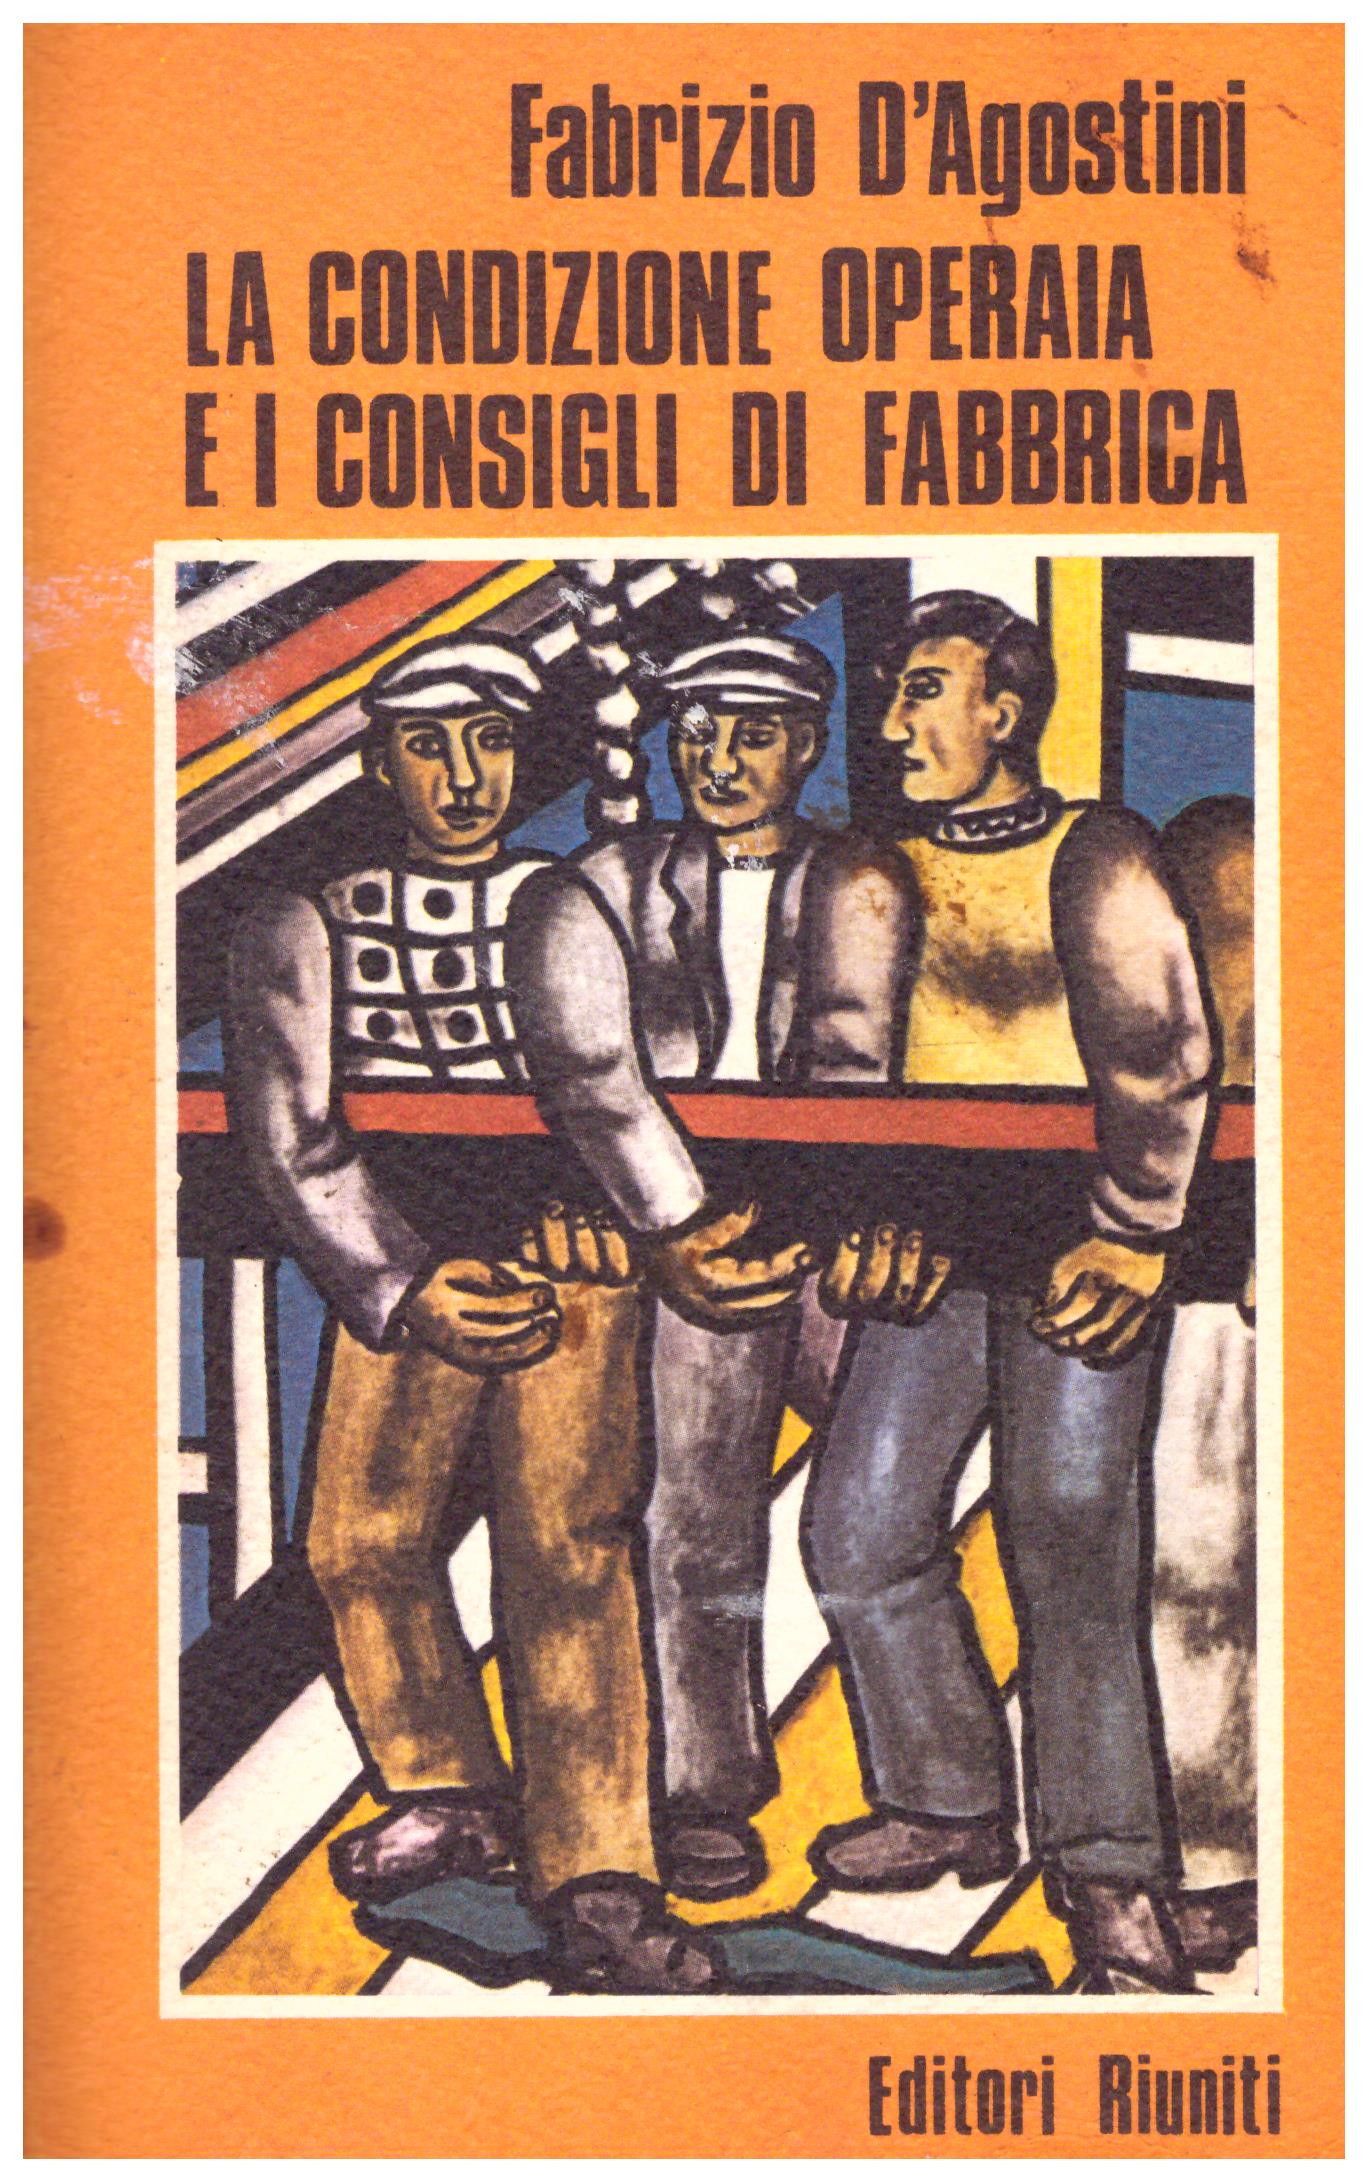 Titolo: La condizione operaia e i consigli di fabbrica, volume 25 di Ventesimo Secolo  Autore : Fabrizio d'Agostini  Editore: Editori Riuniti, 1974